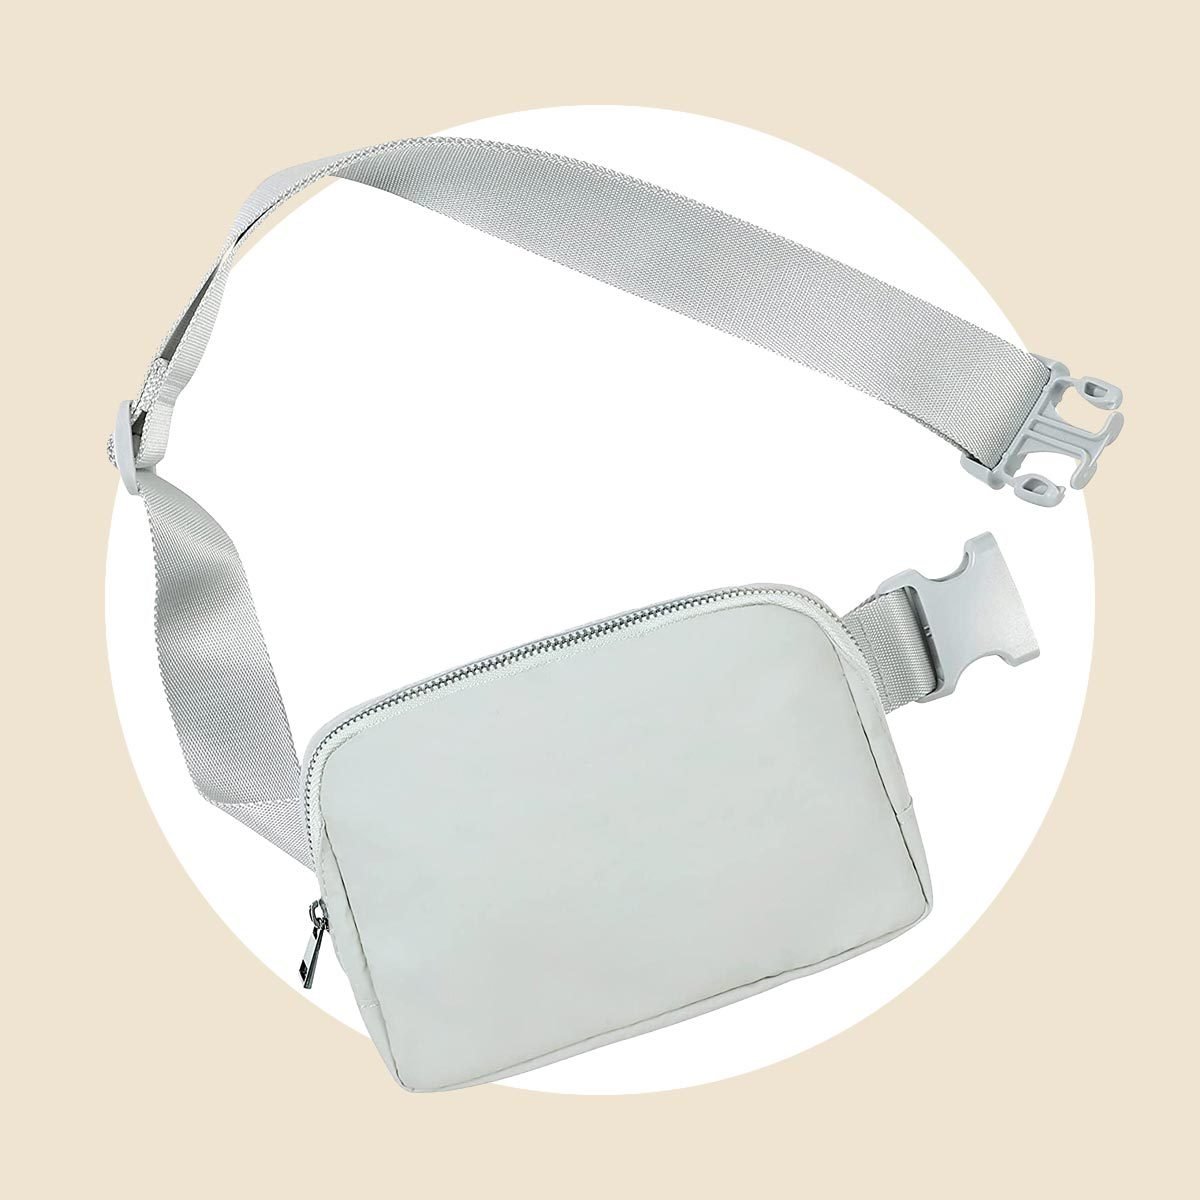  Ododos Unisex Mini Belt Bag With Adjustable Strap 